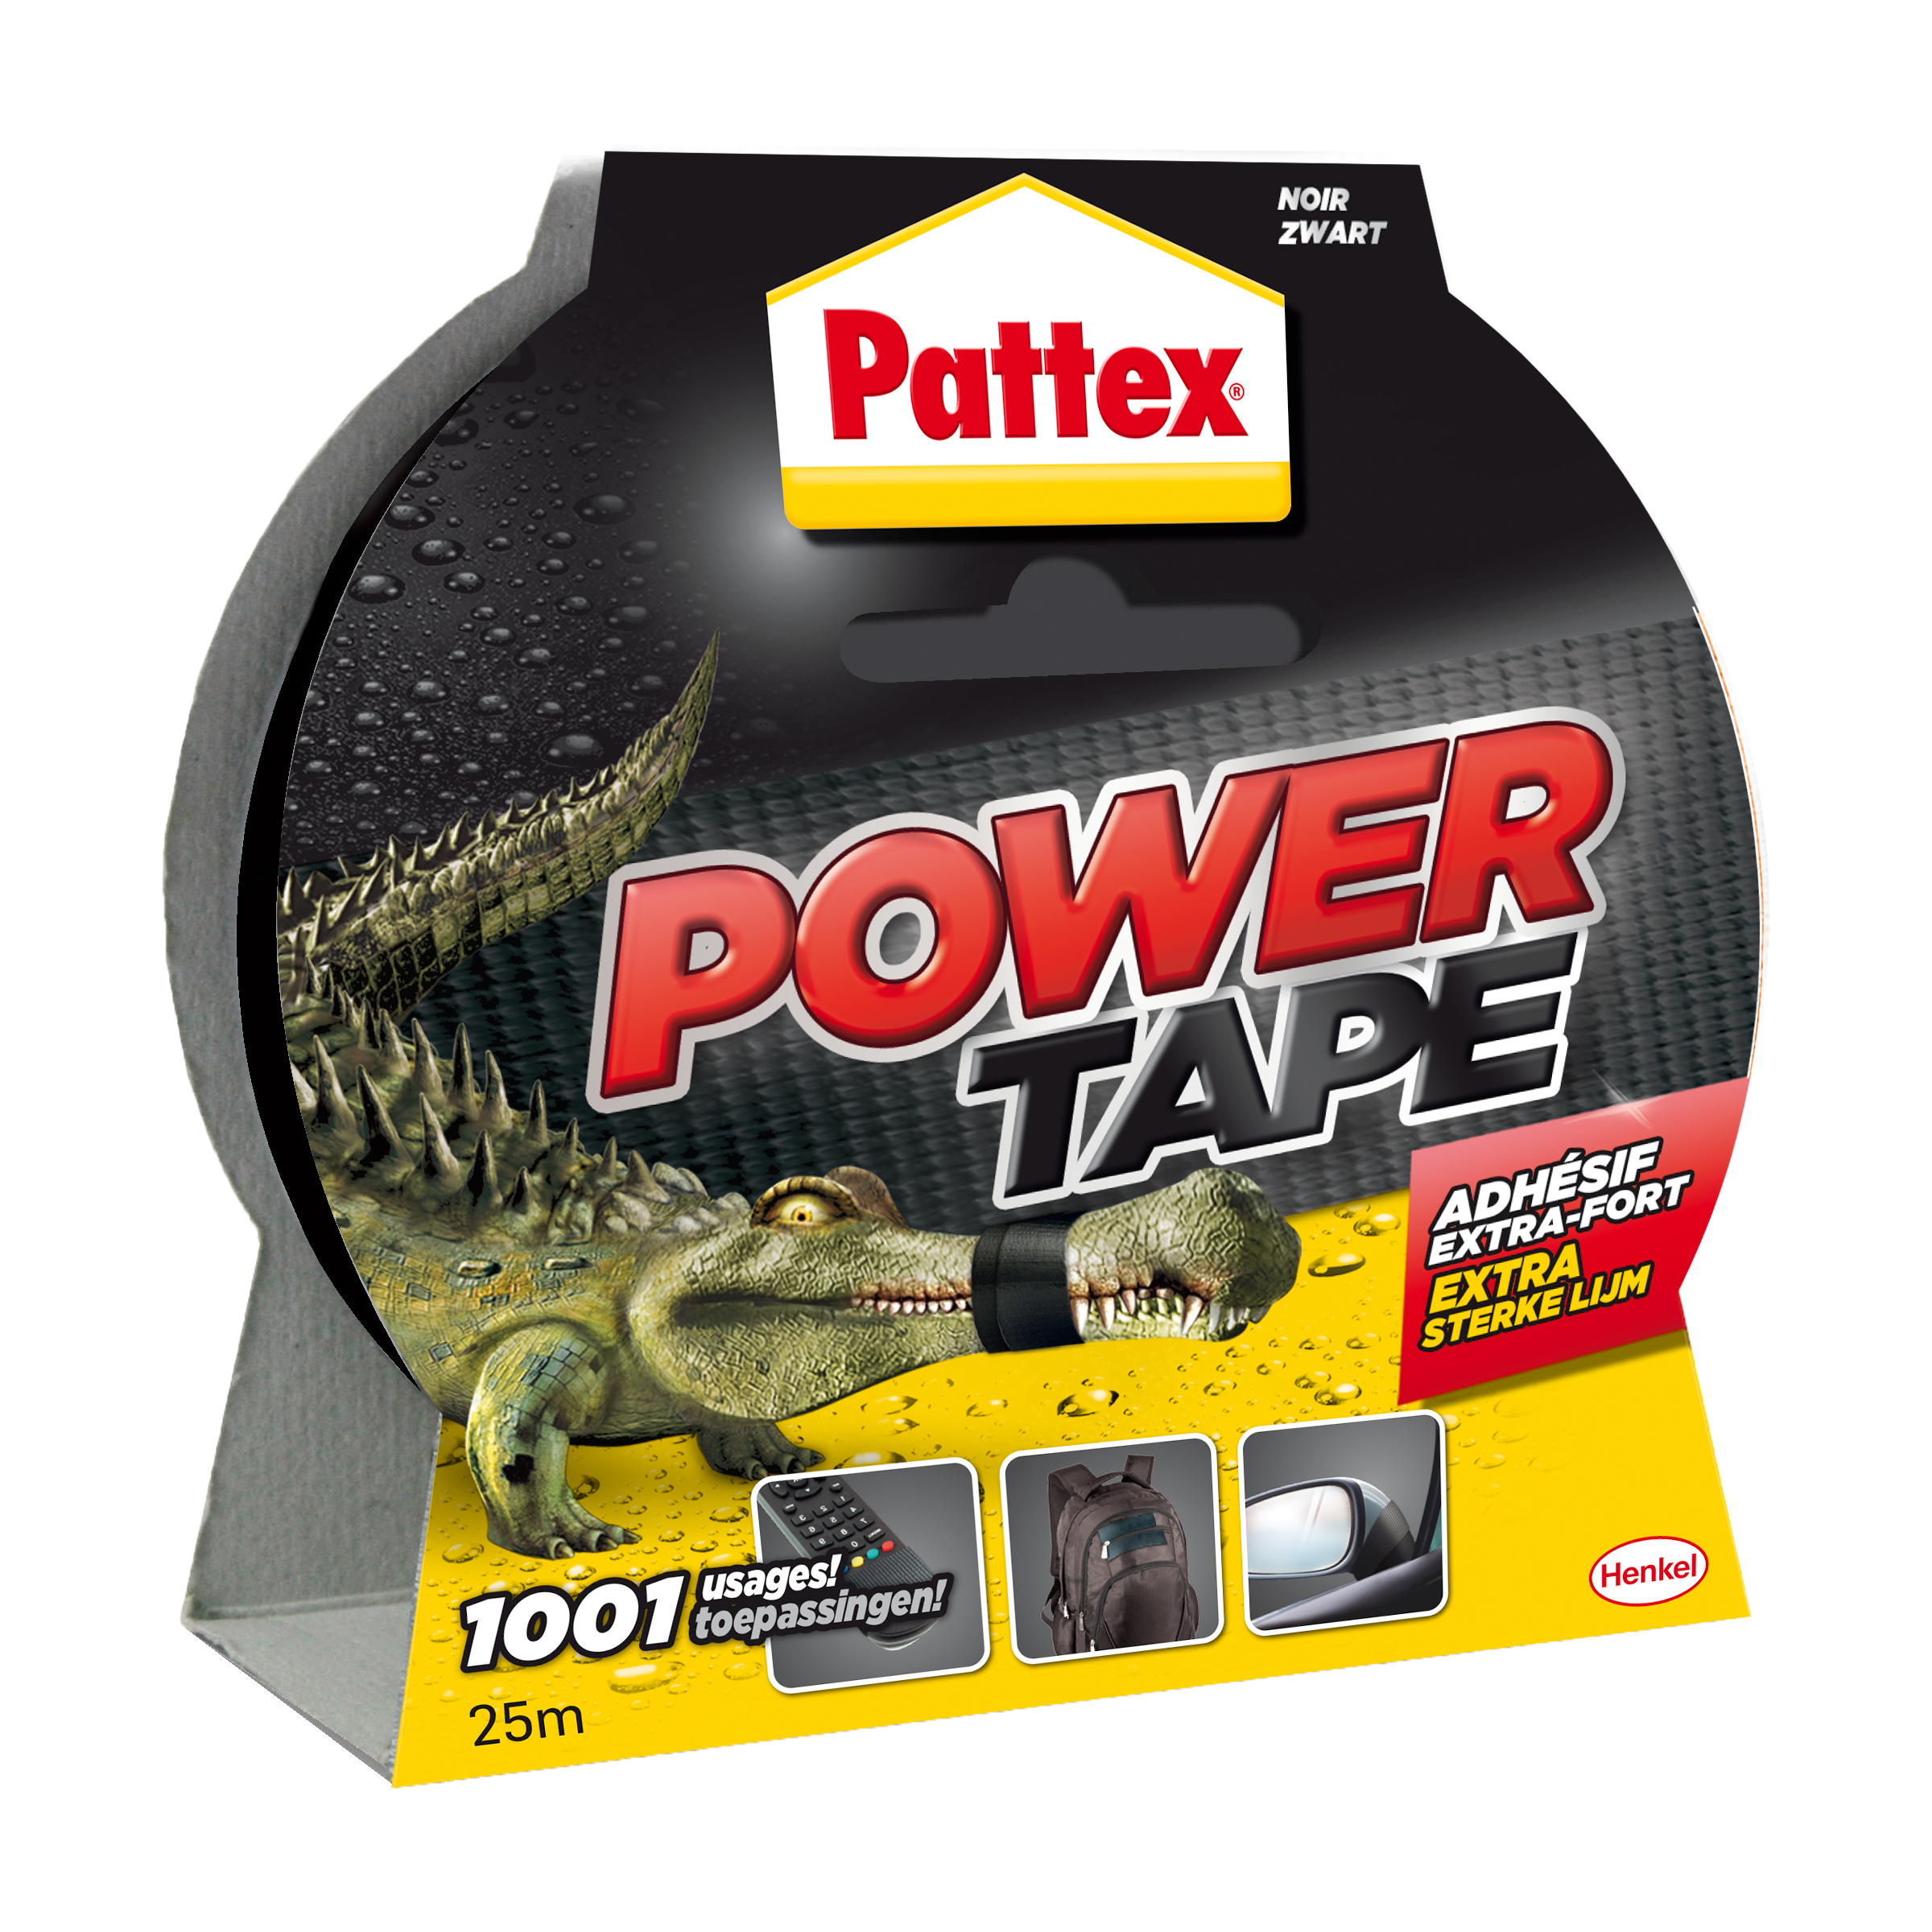  Power Tape - Repair